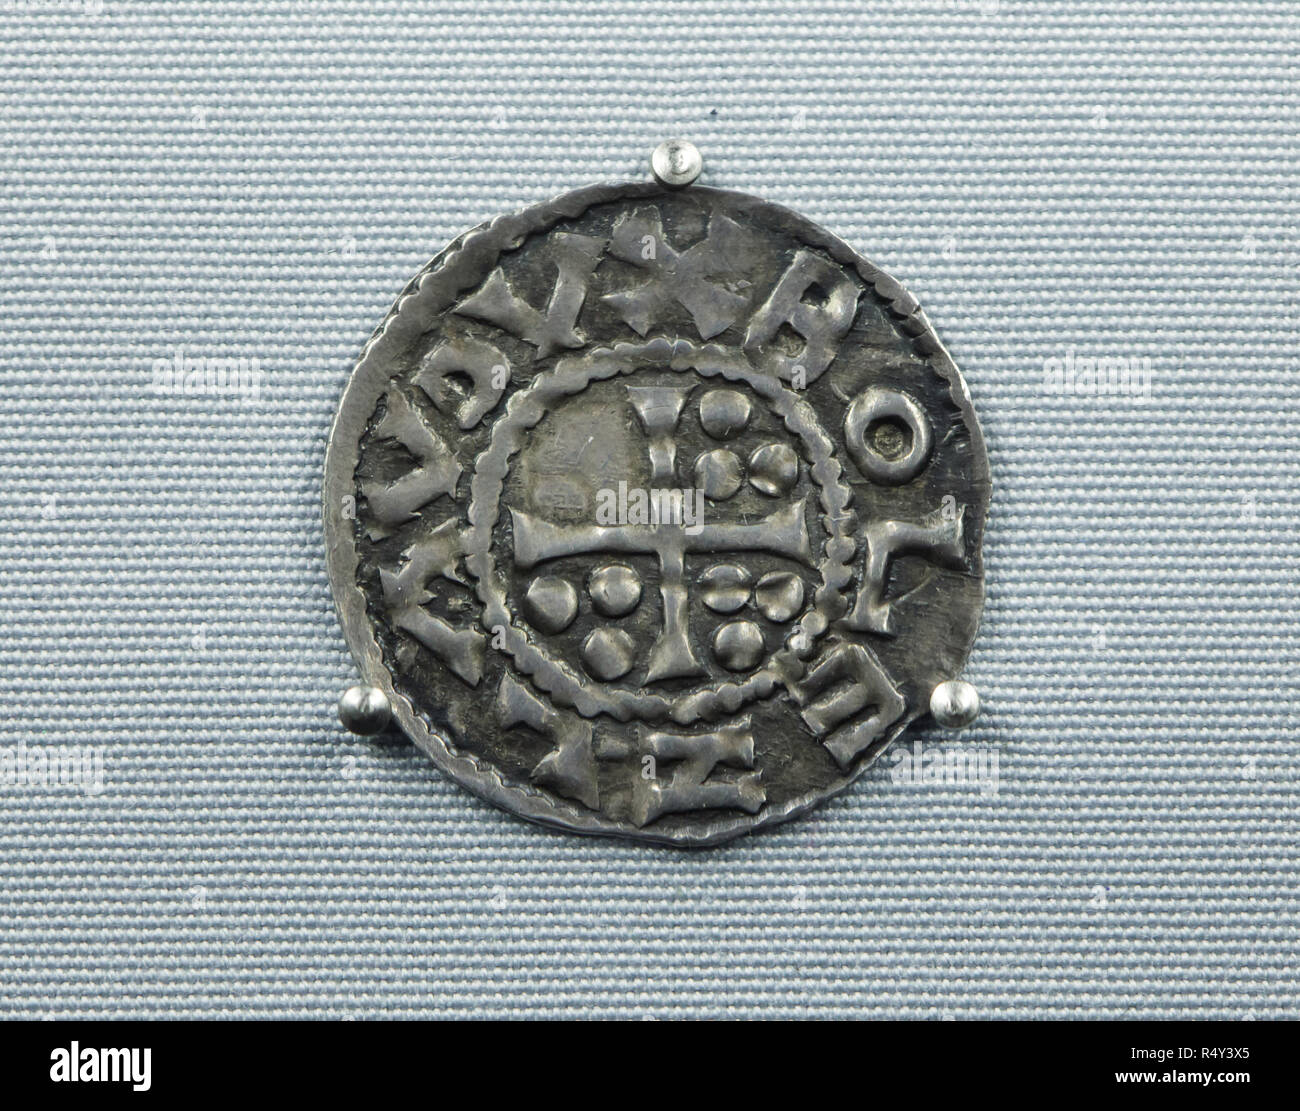 Die älteste Tschechische Münze aus dem 10. Jahrhundert datiert auf Anzeige an der Ausstellung im Nationalmuseum (Národní Muzeum) in Prag, Tschechische Republik. Die mittelalterlichen böhmischen Silber münze (denar) in Prag unter der Herrschaft des Herzogs Boleslaw ich die Grausame minted vor 966 gilt als die älteste erhaltene Münze zu sein, im Gebiet, das heute das Tschechische Republik geprägt. Ein Kreuz mit neun dotes ist in die Münze mit einer Inschrift um 'BOLEZLAV DVX' ('Duke Boleslaw") dargestellt. Die Ausstellung zum 200. Jahrestag des Nationalen Museum präsentiert 200 der wichtigsten Elemente aus Stockfoto